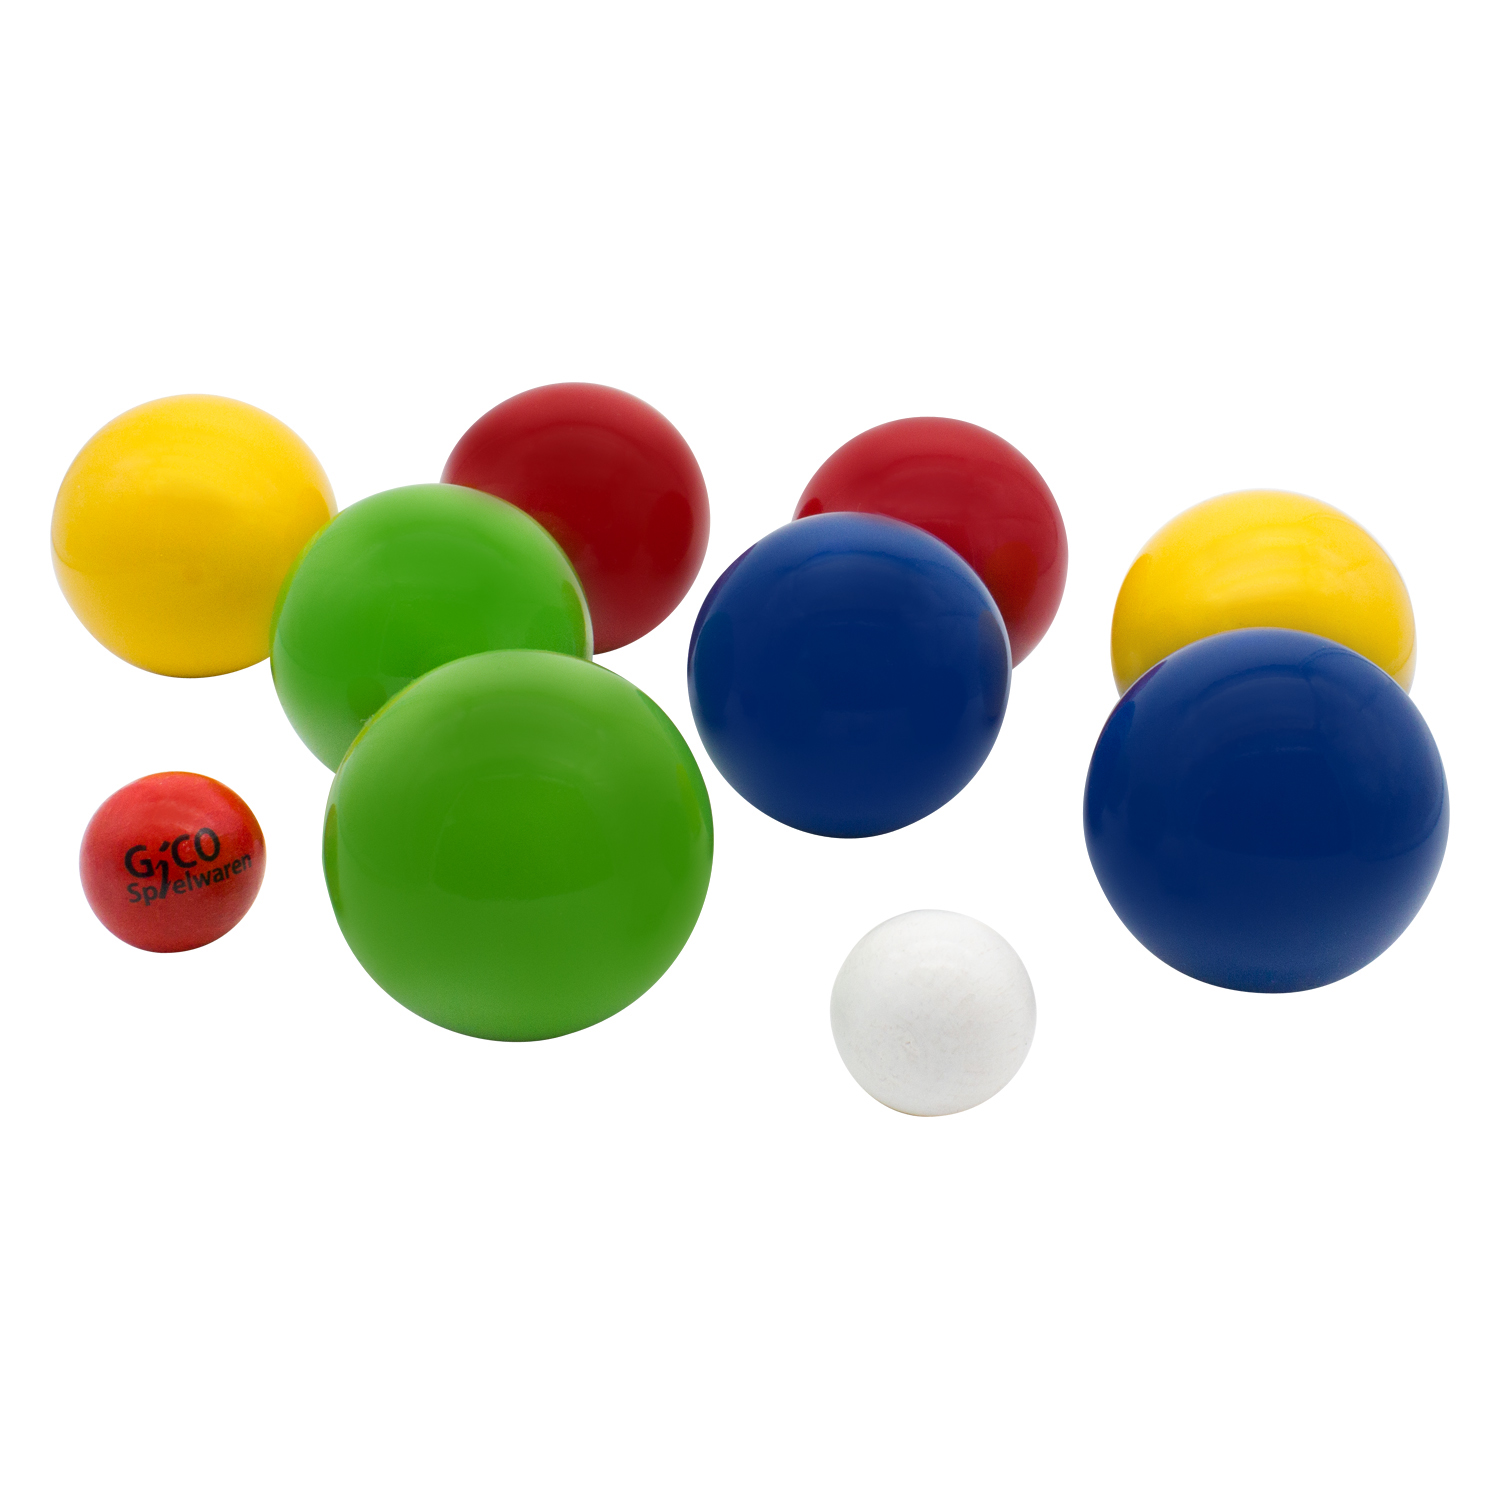 GICO Boccia Spiel aus Holz, vollfarben lackiert mit 8 Kugeln, Durchmesser 7 cm - 3013